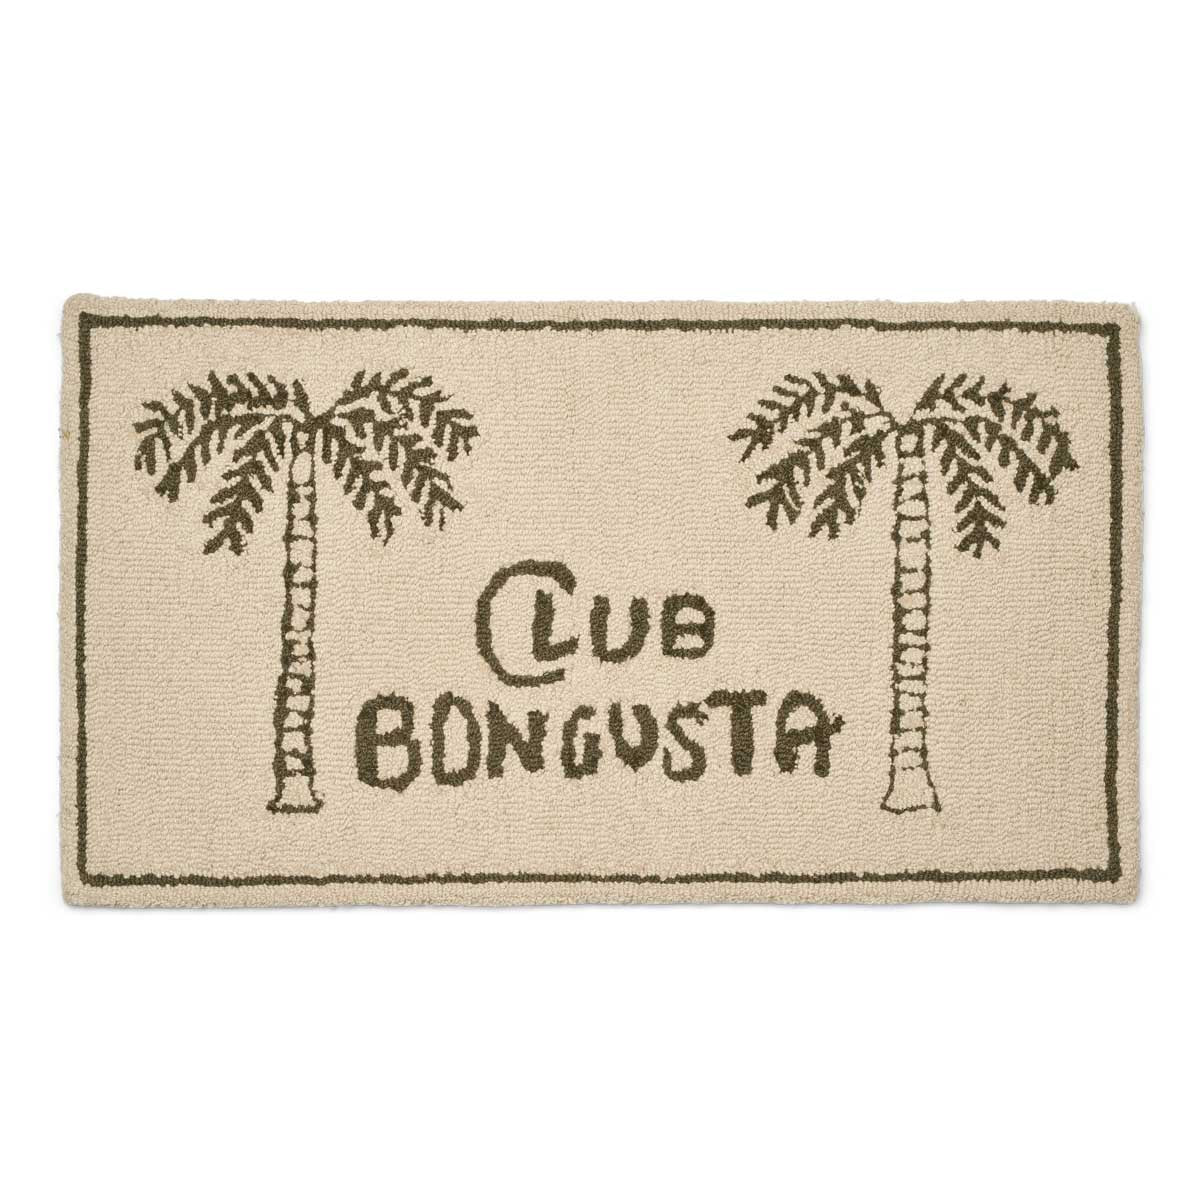 Bongusta, Product image, Frame Rug - Club Bongusta, 2 of 3}